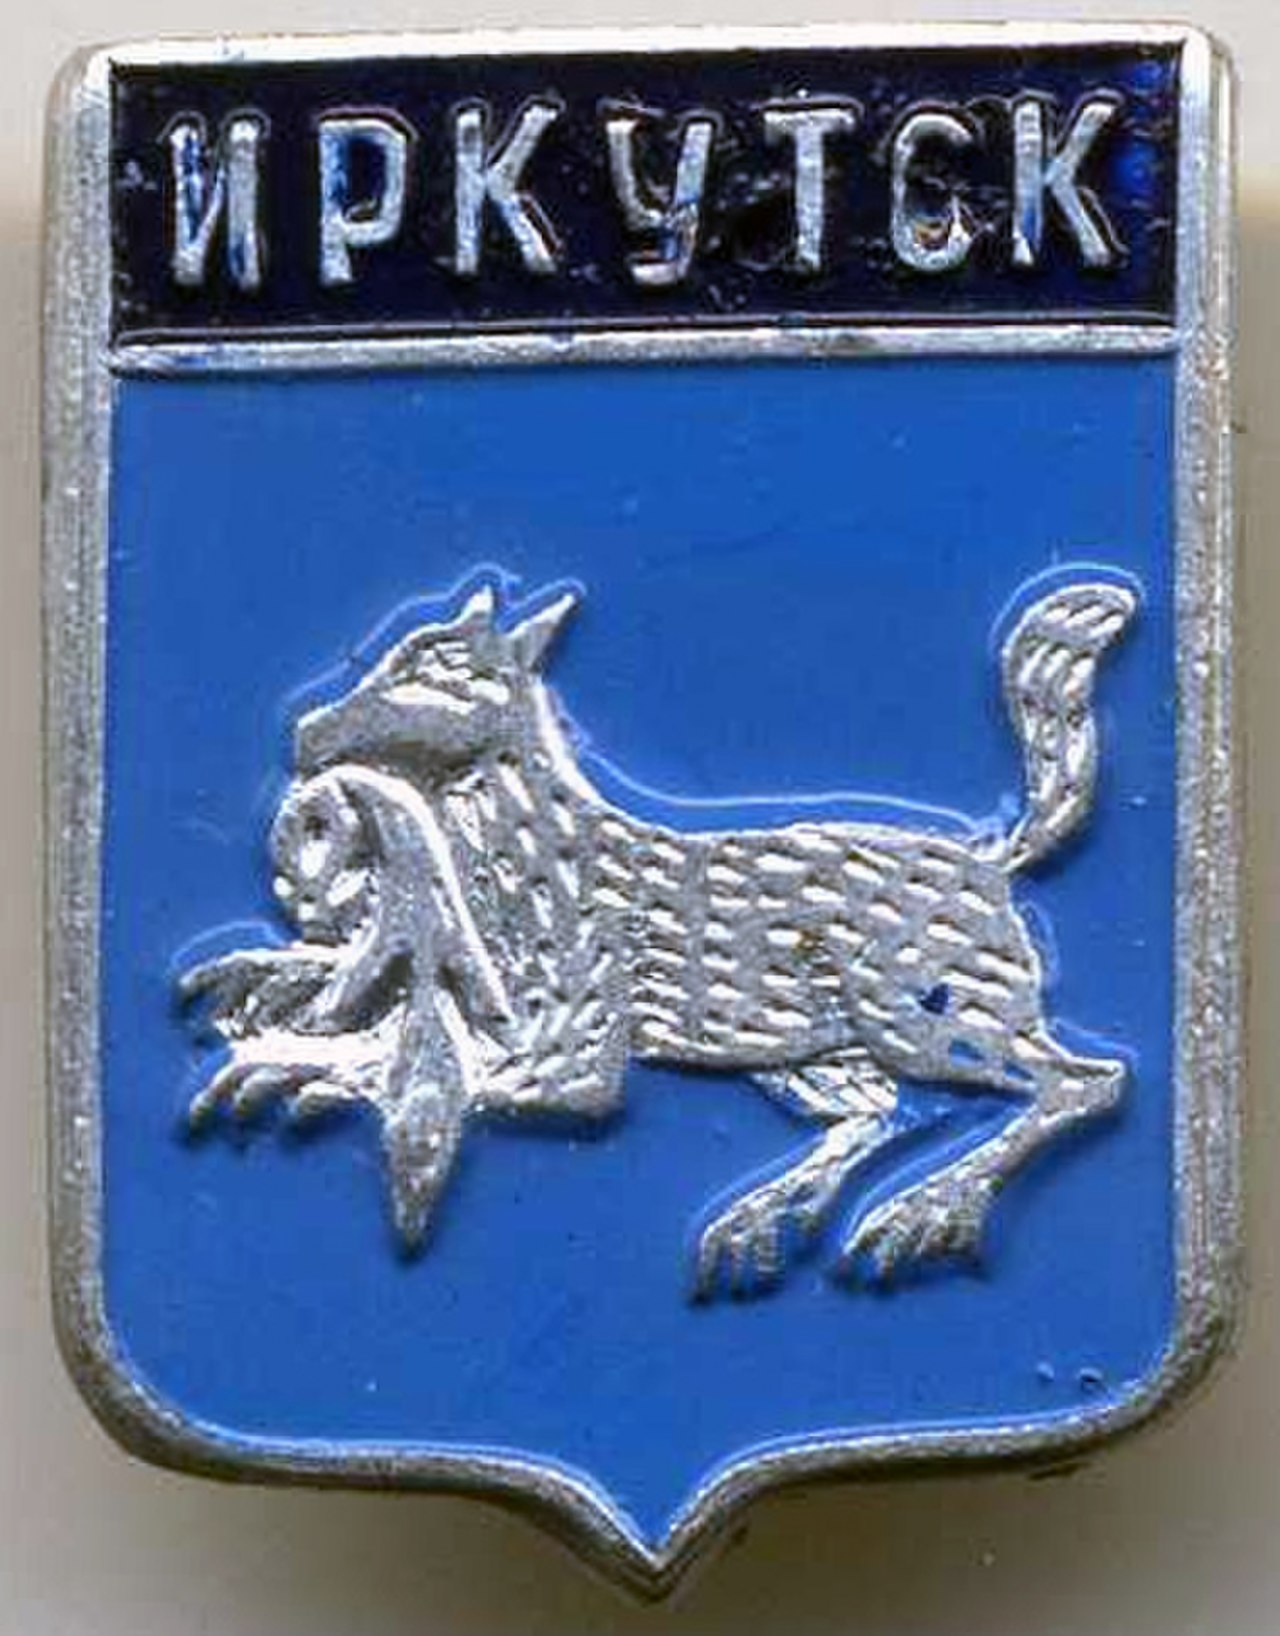 Иркутск 1661 герб